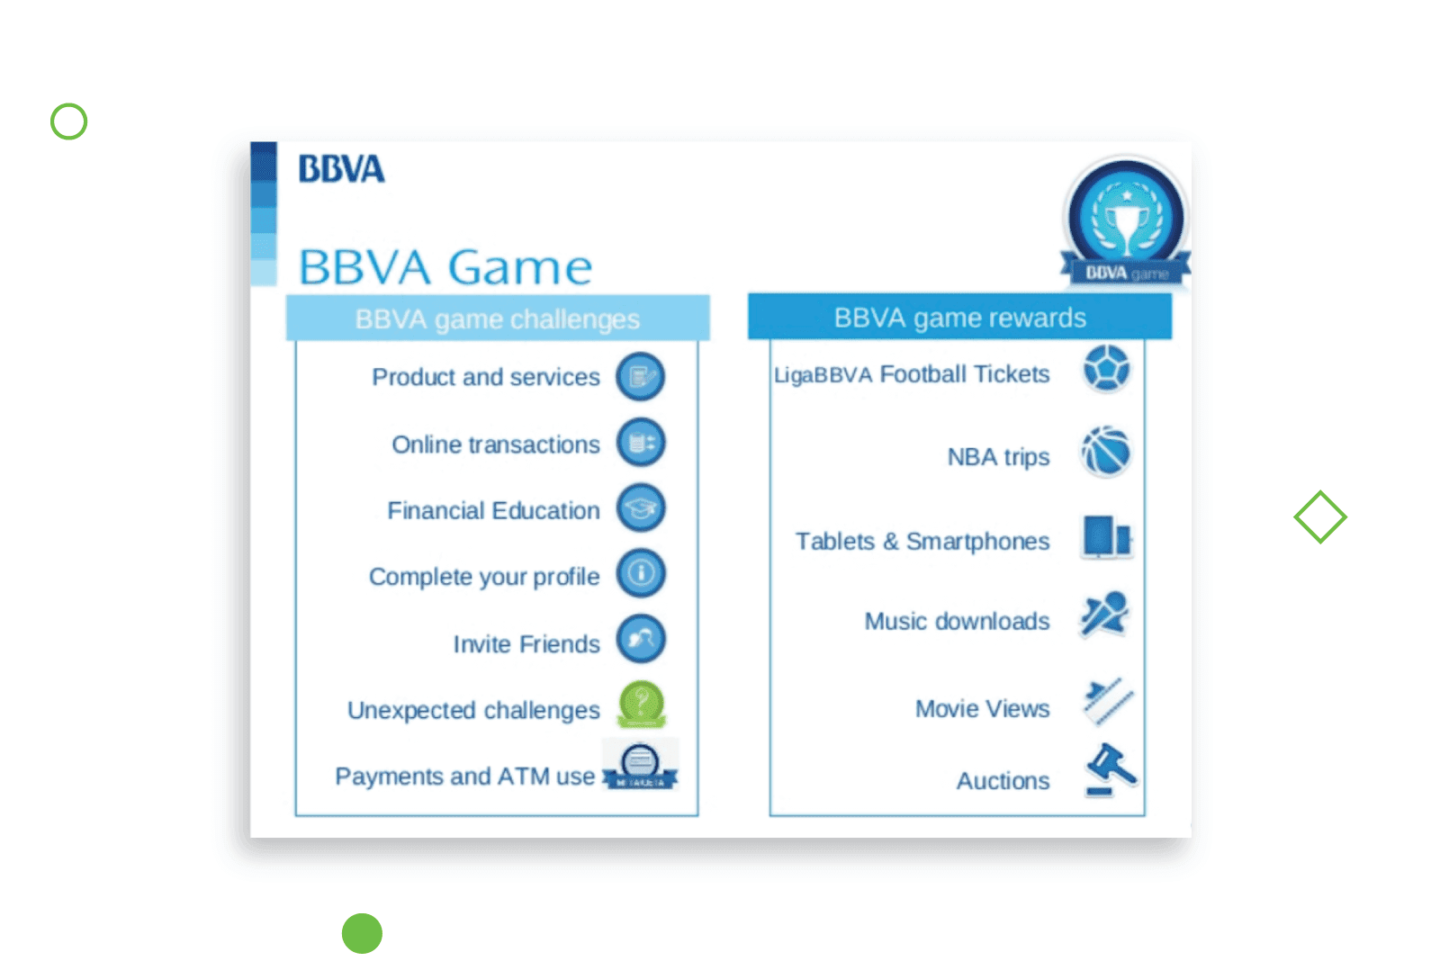 BBVA digital banking gamification image